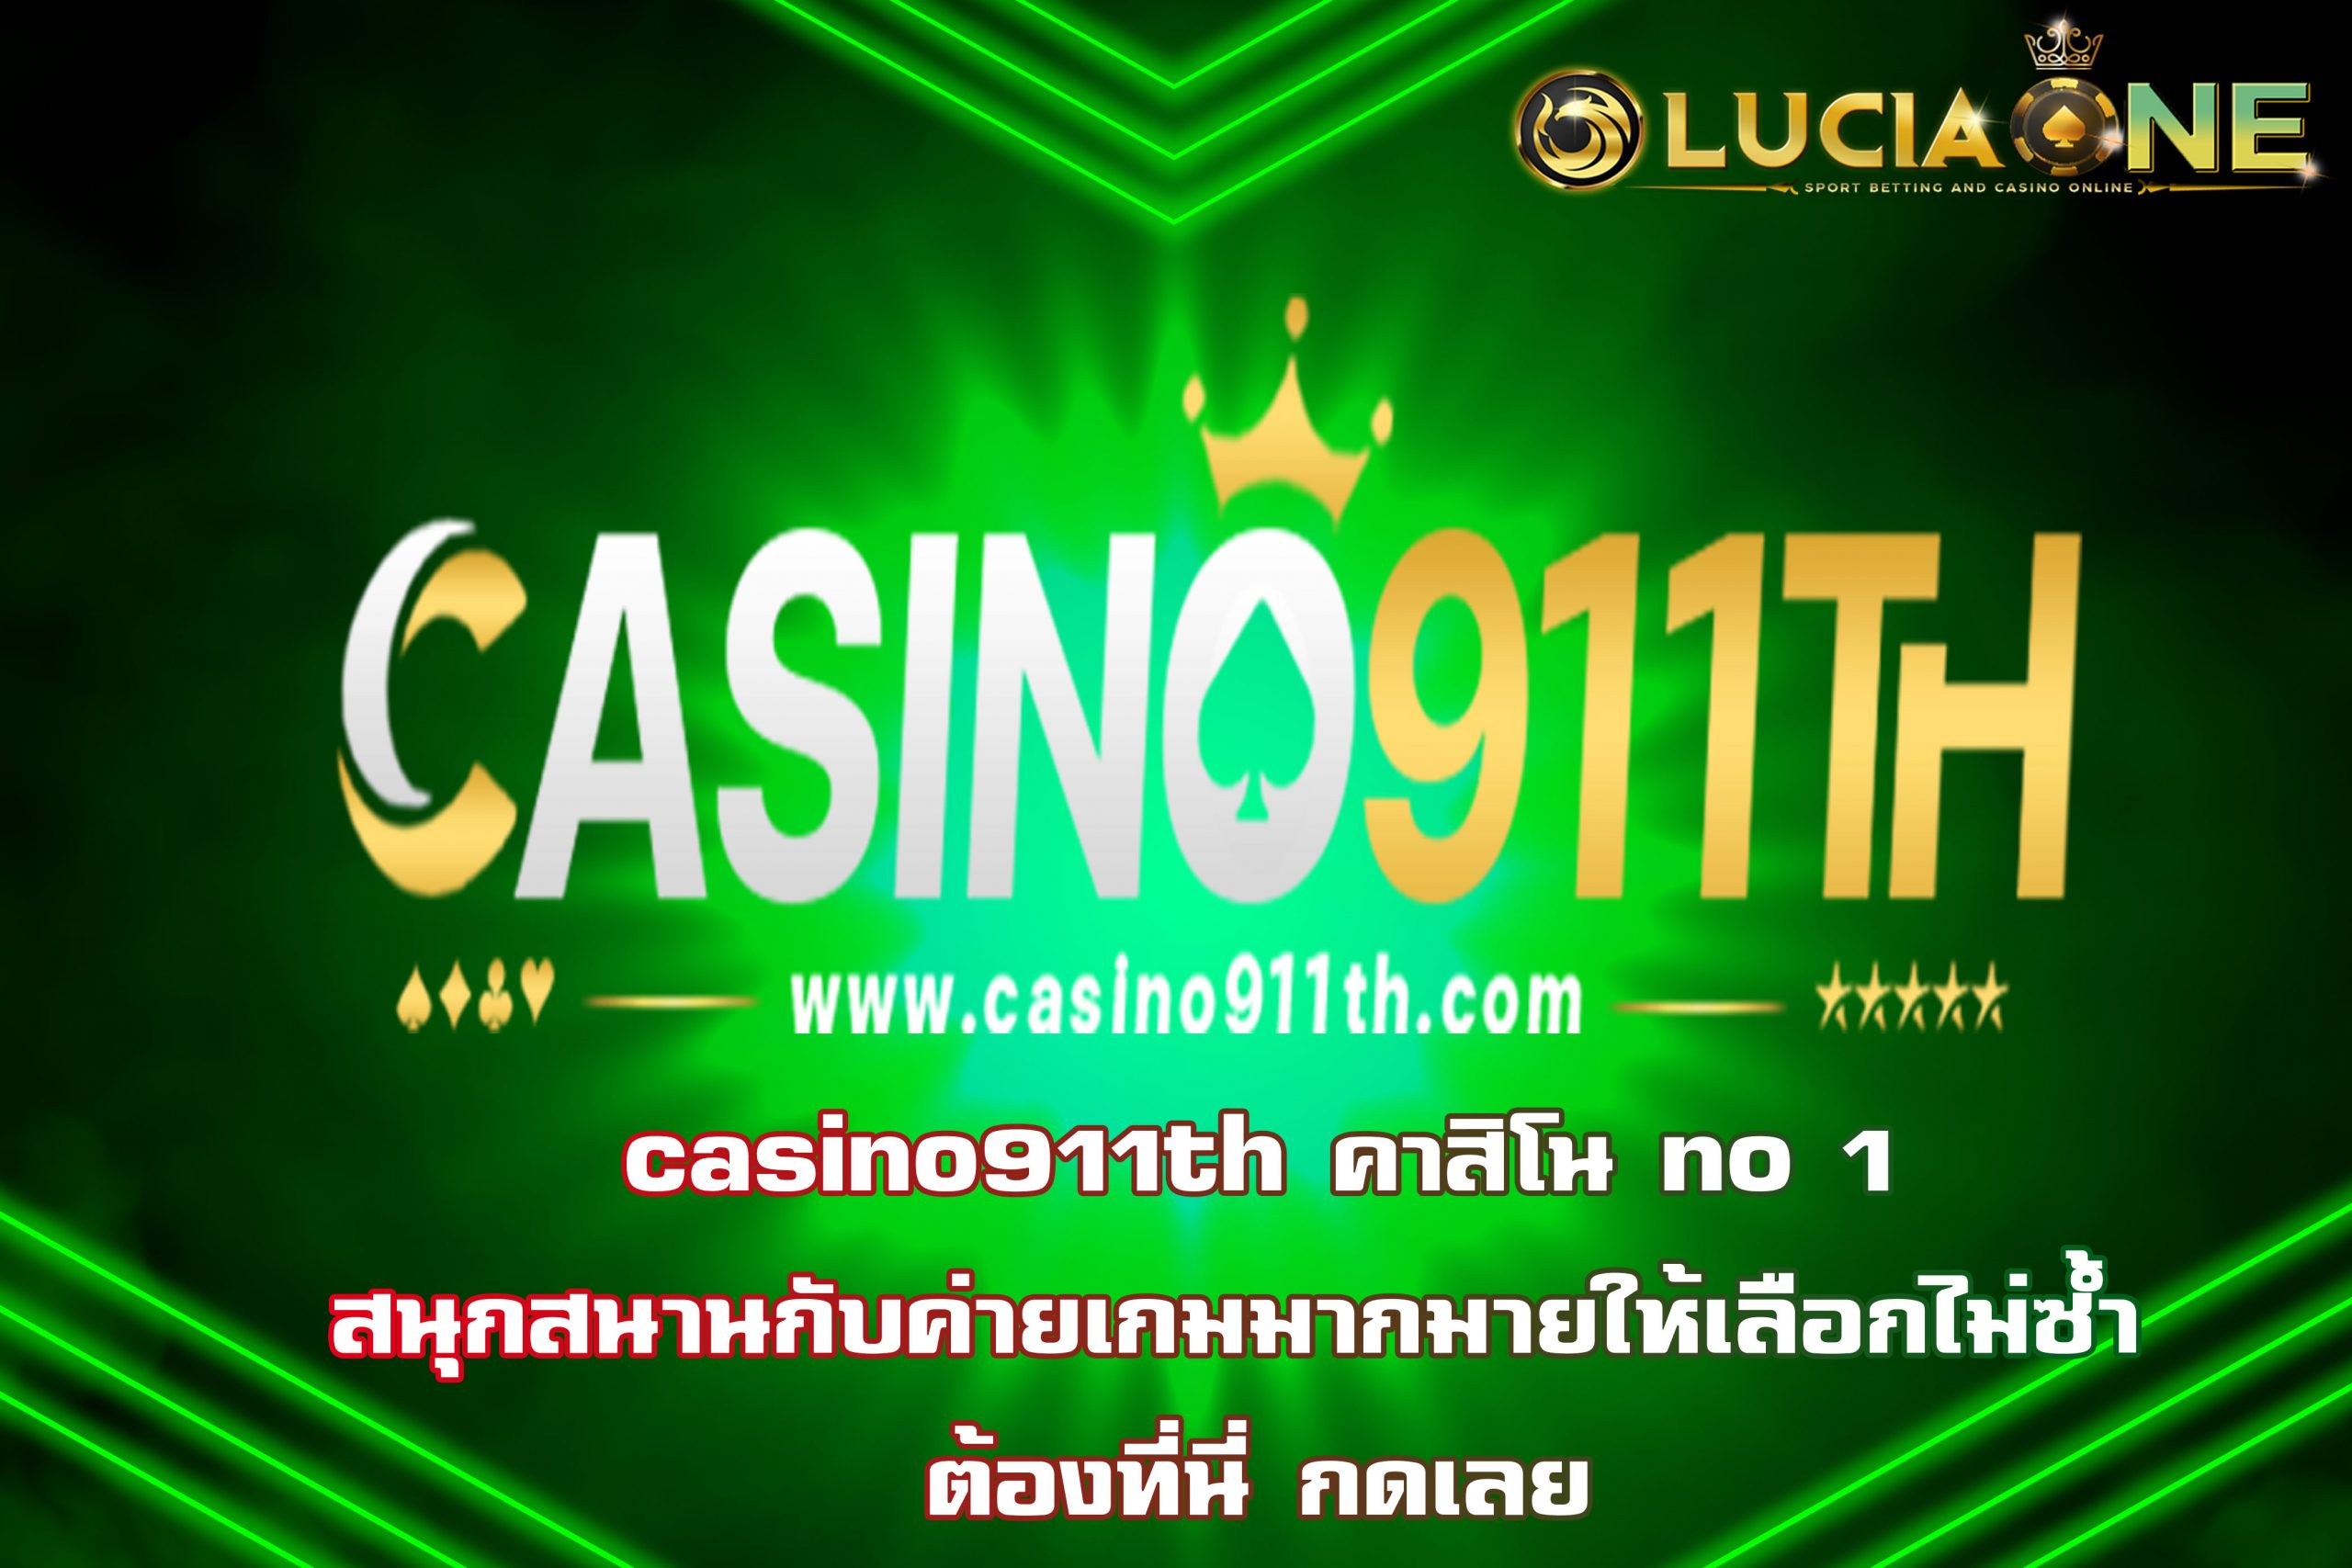 casino 911th คาสิโน no1 สนุกสนานกับค่ายเกมมากมายให้เลือกไม่ซ้ำ